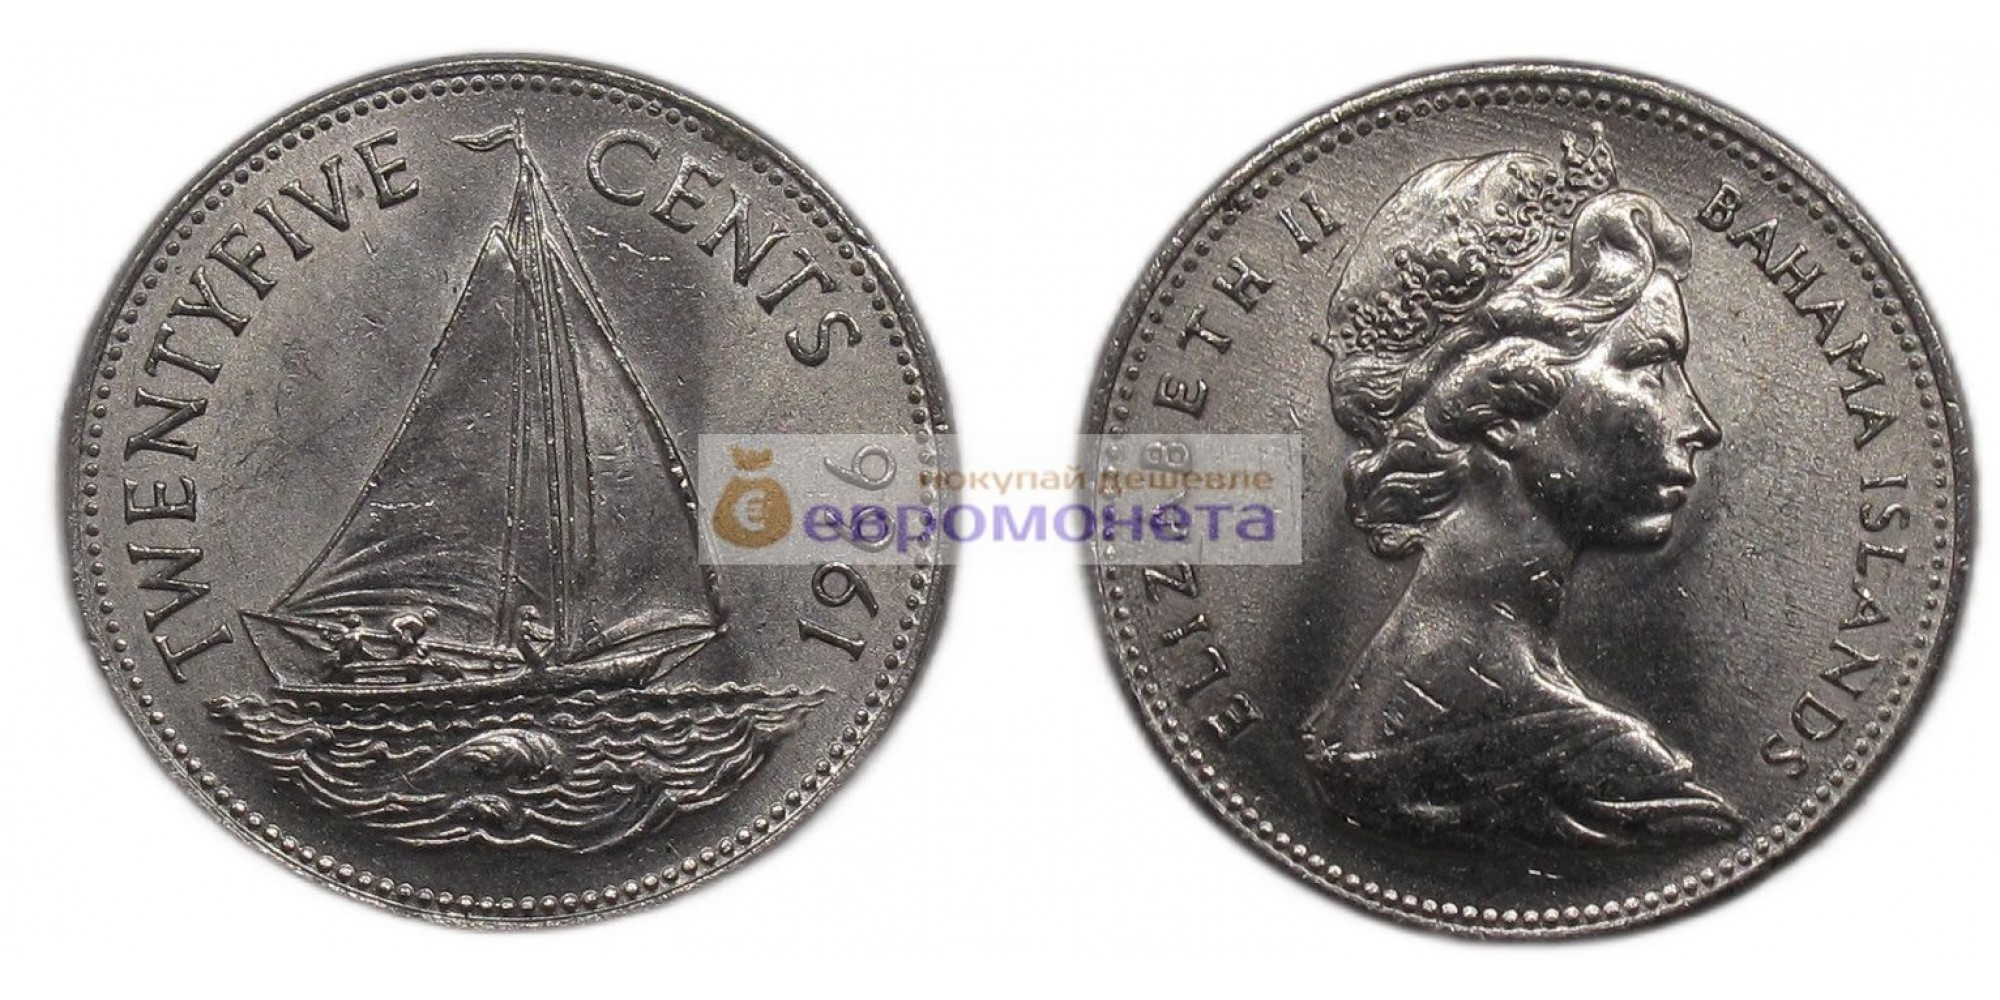 Багамские острова (Багамы) 25 центов 1966 год. Королева Елизавета II